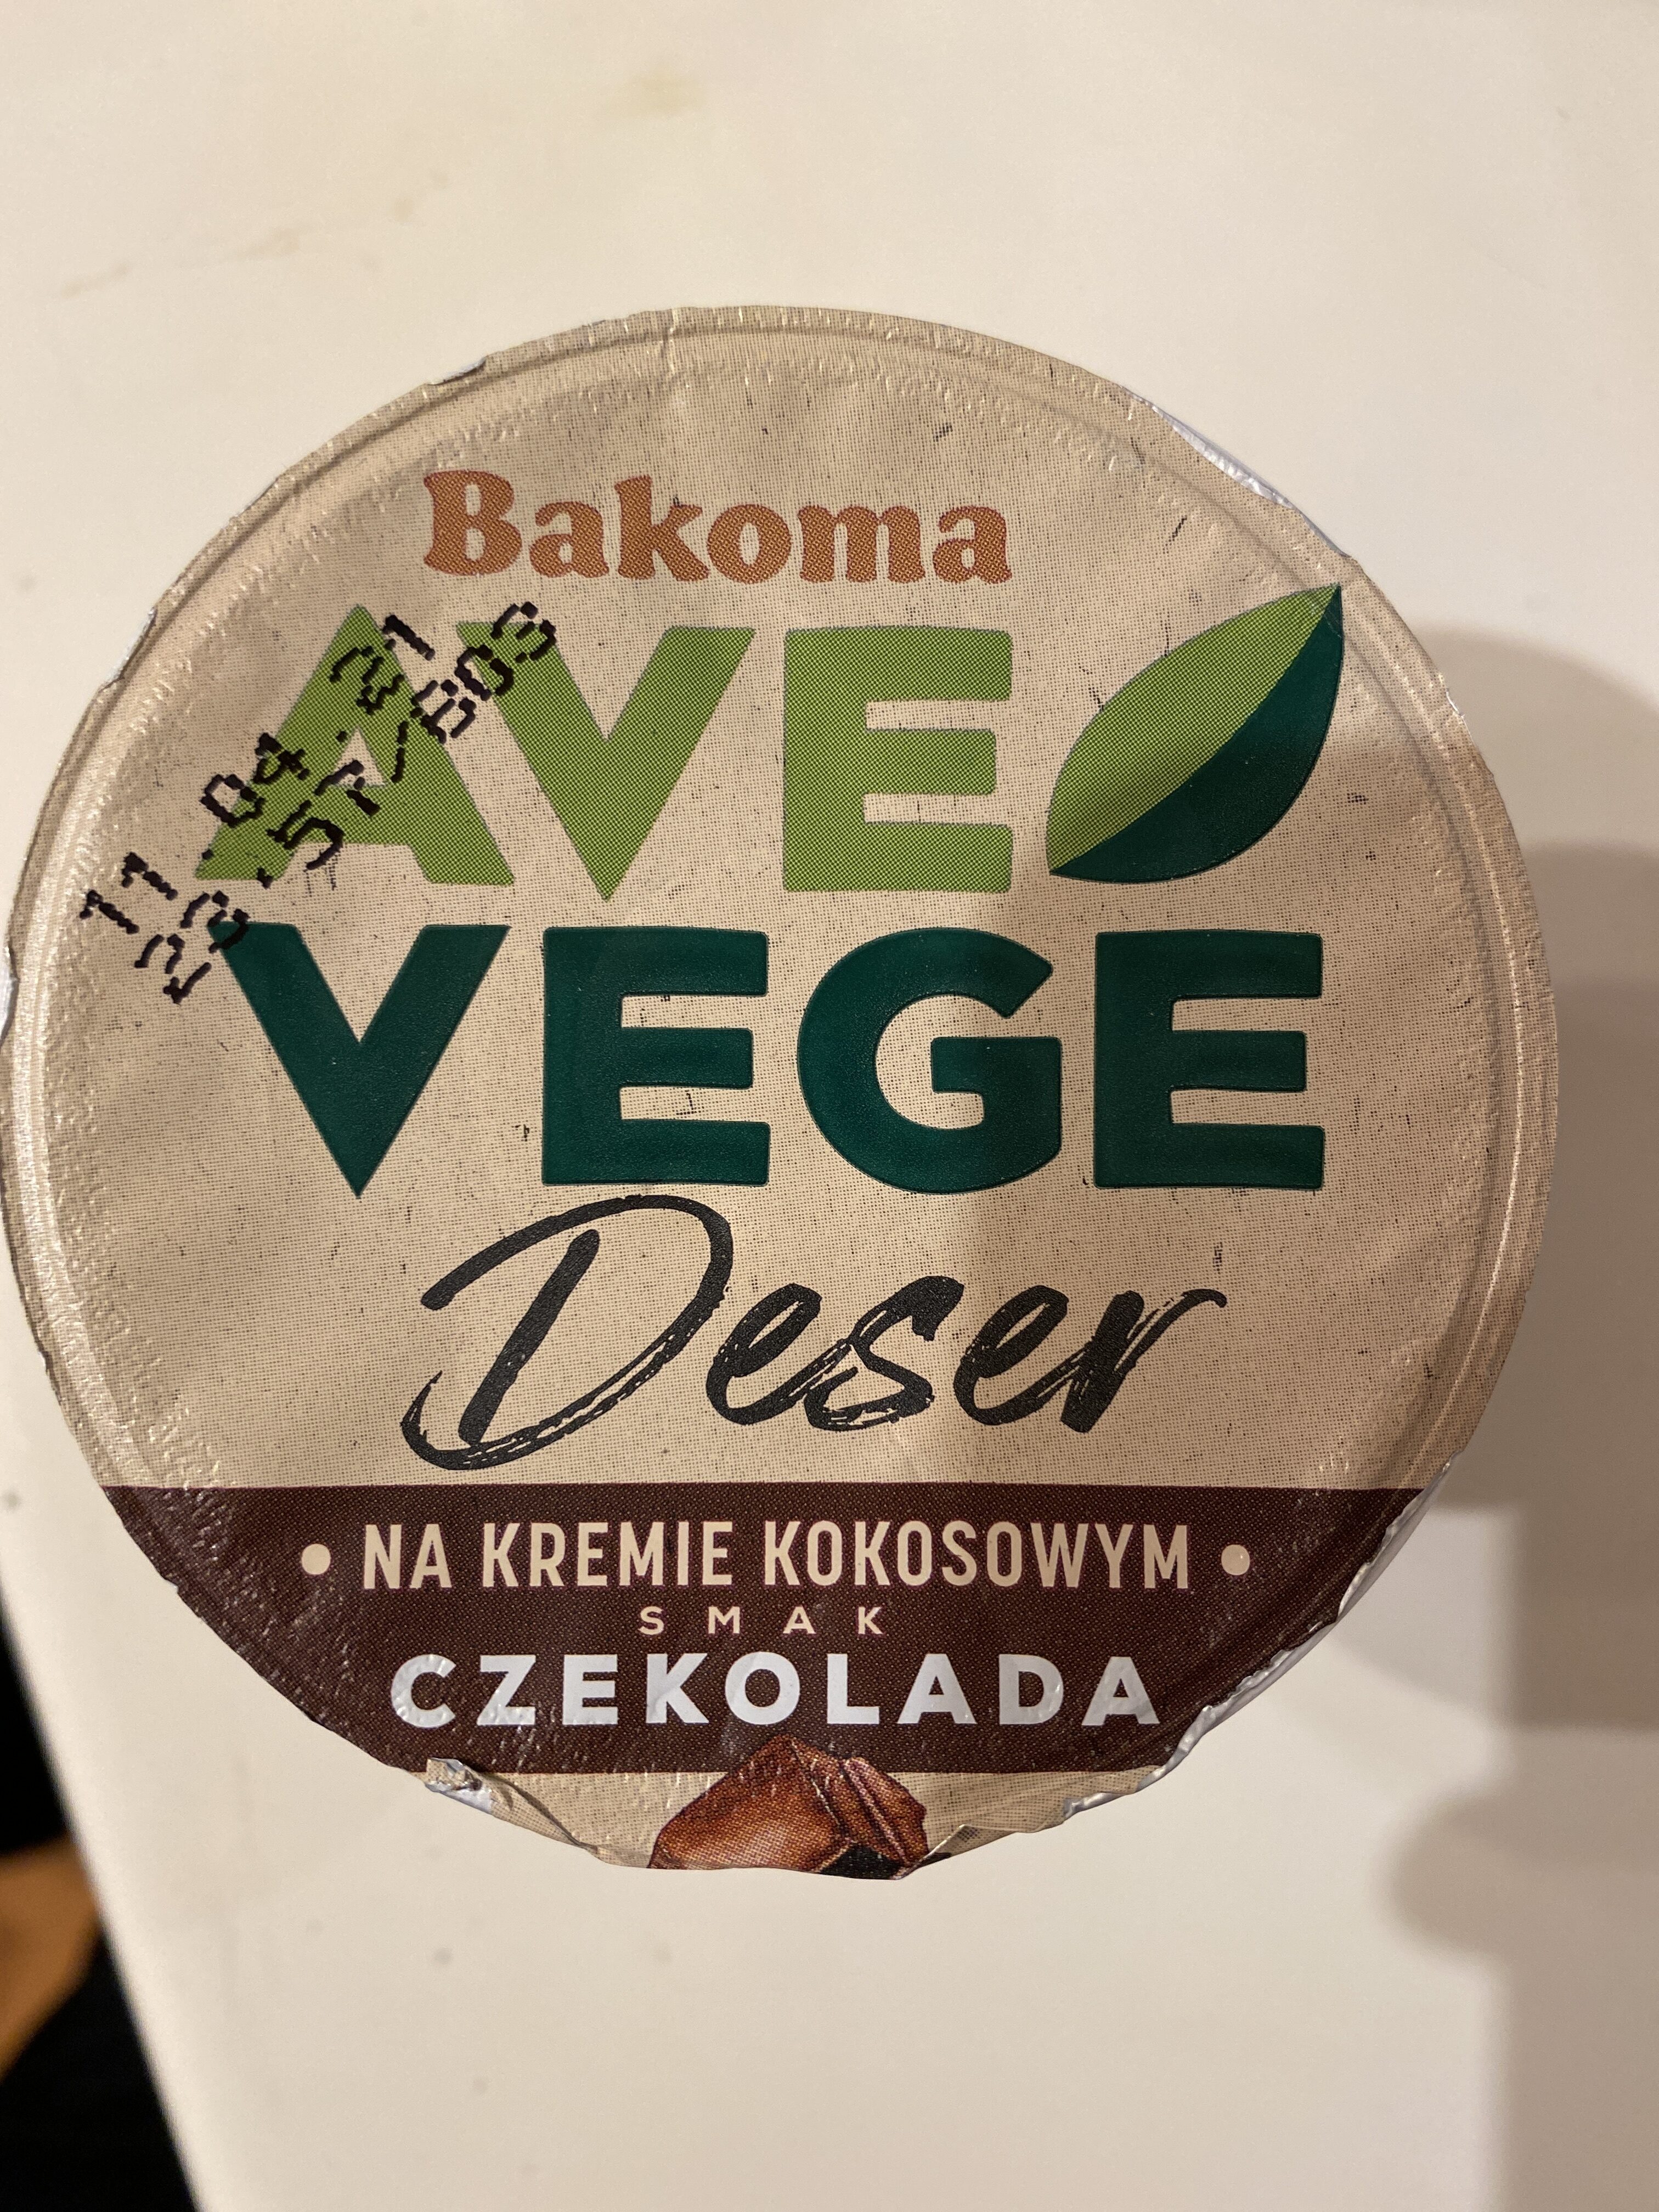 Bakoma Ave Vege czekolada - Product